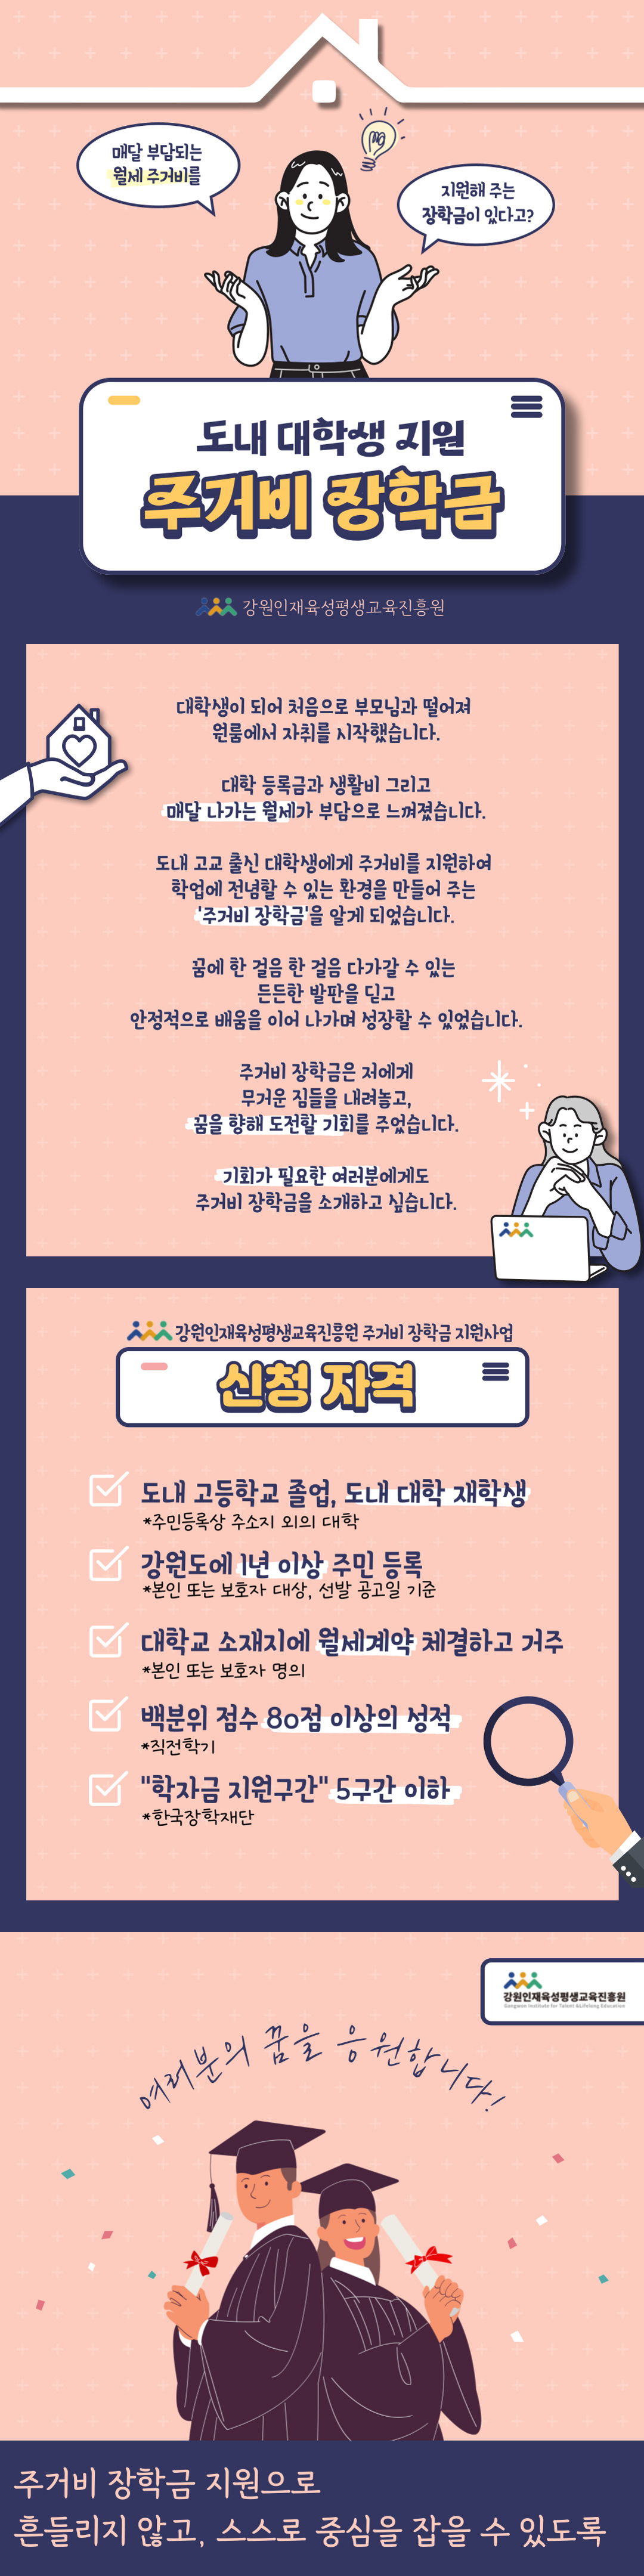 제7회 공모전_카드뉴스부문 우수상.png